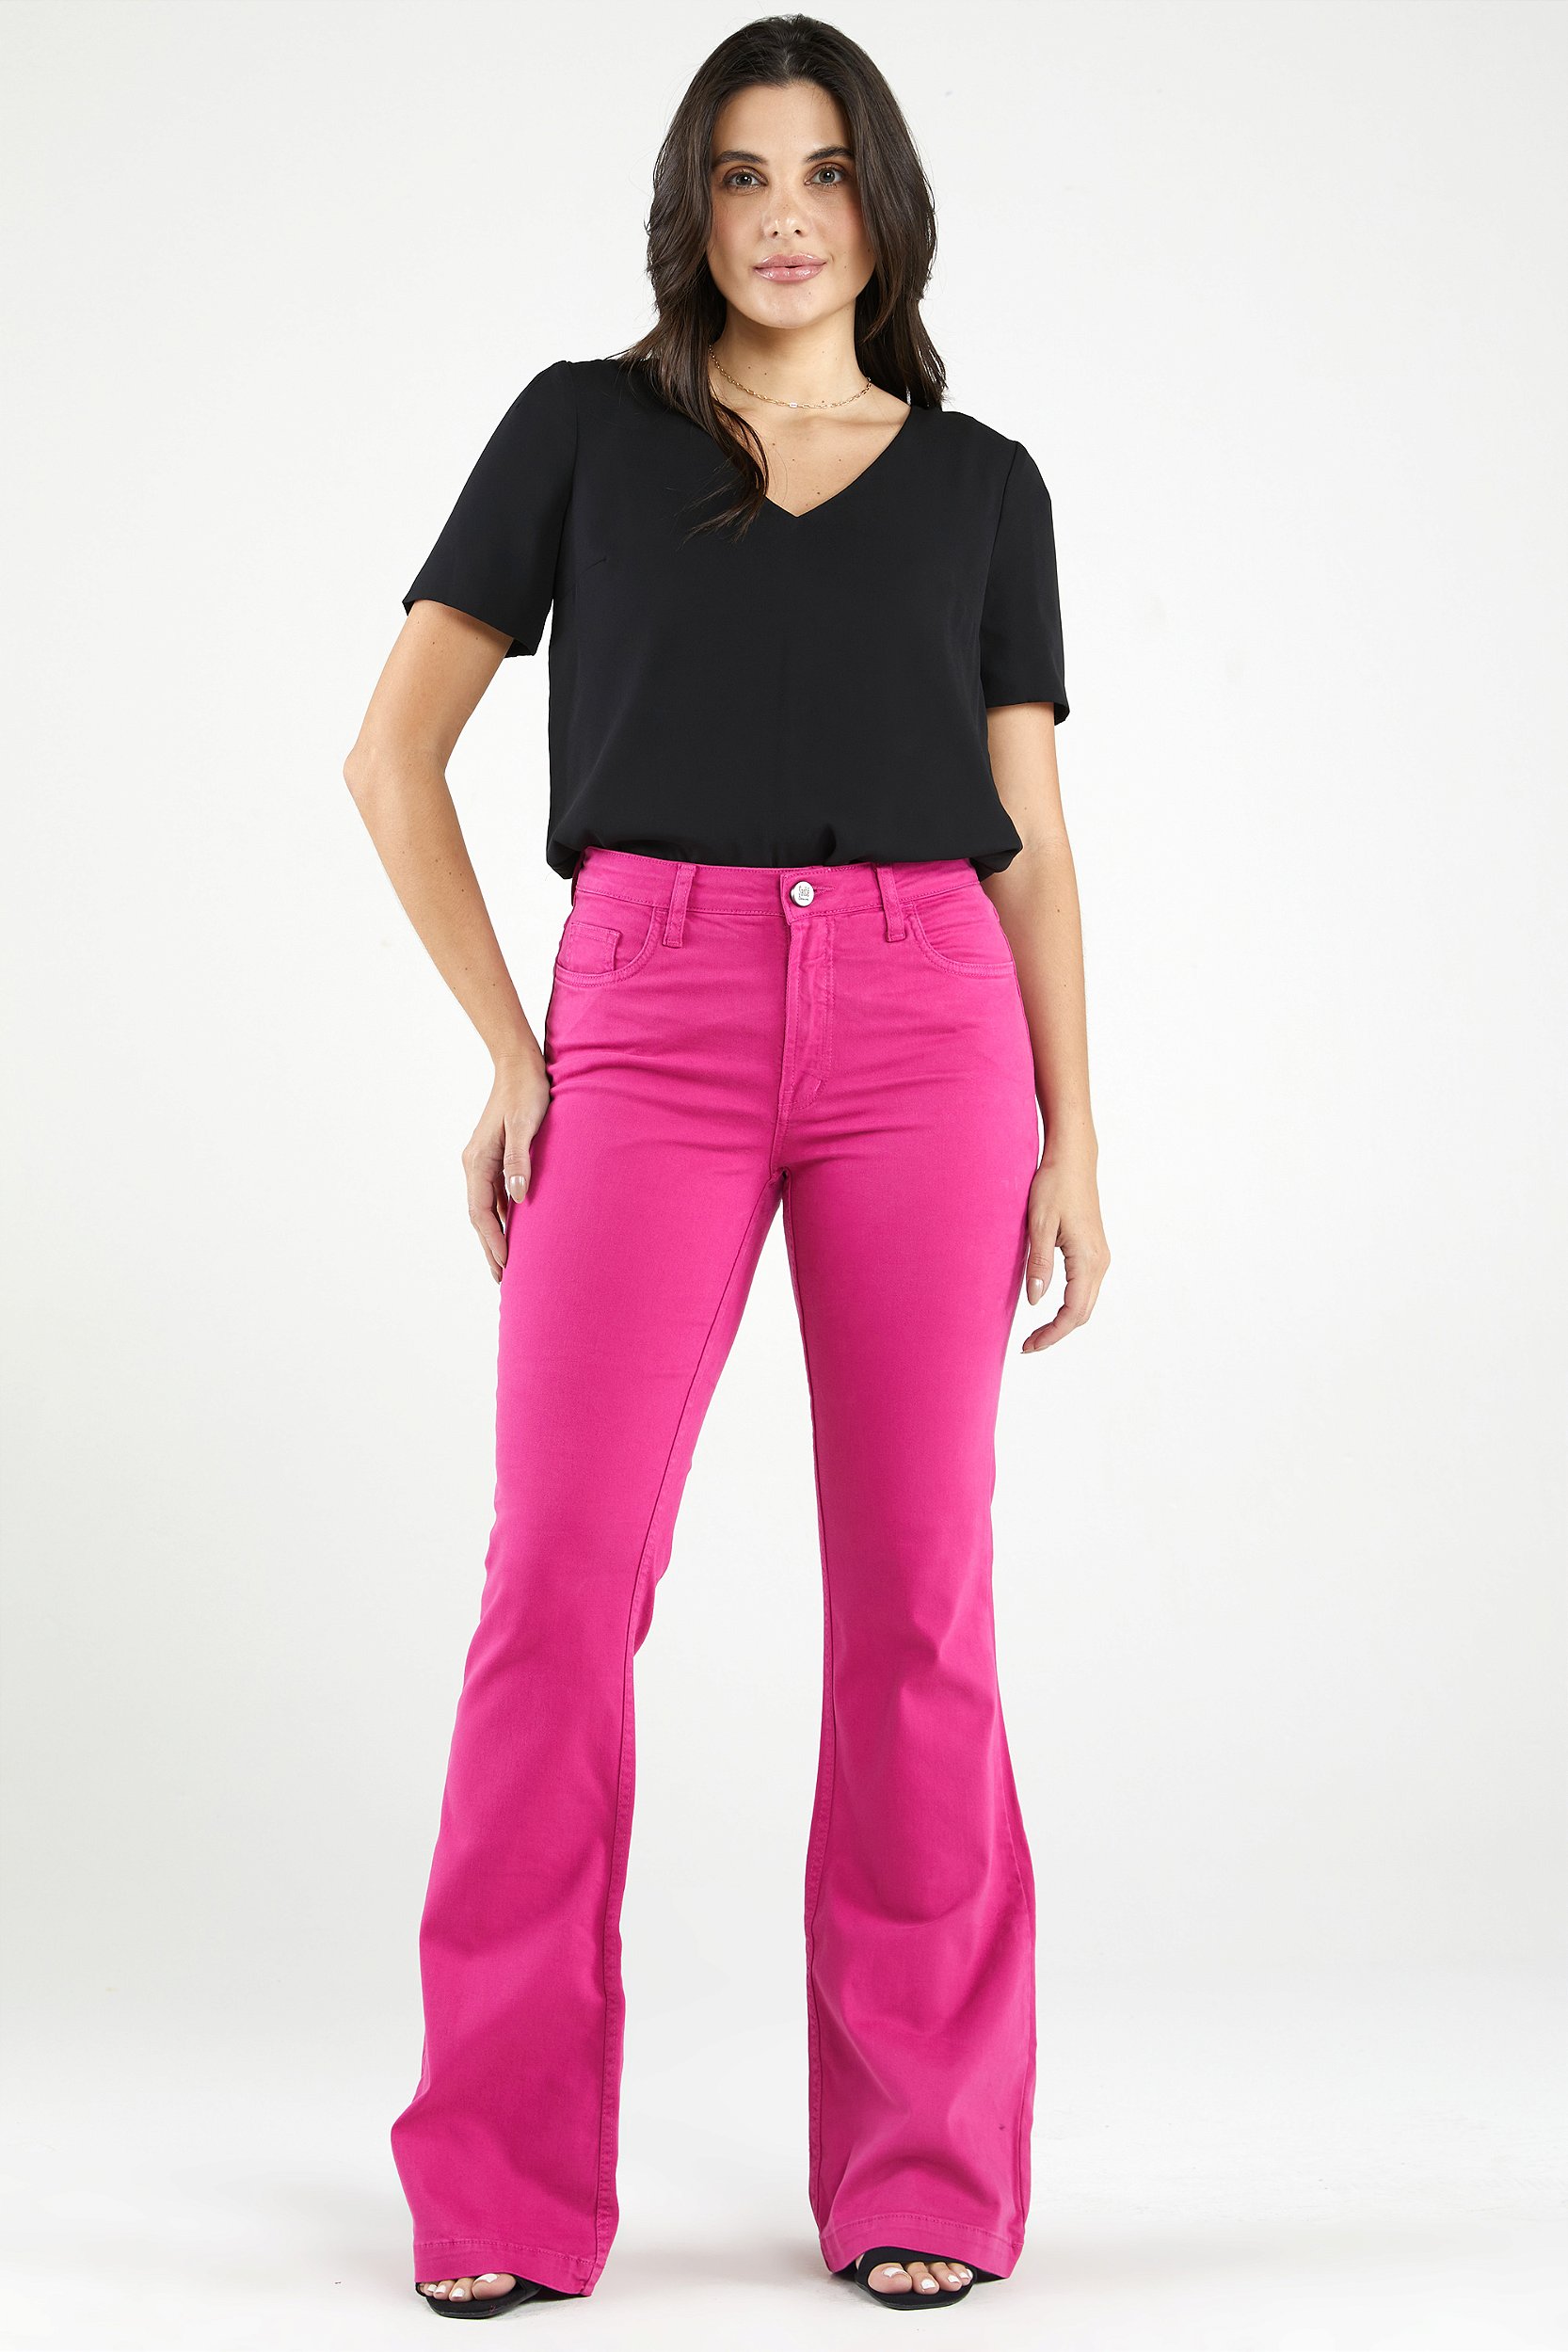 Short jeans feminino moda blogueira - R$ 64.99, cor Rosa (de